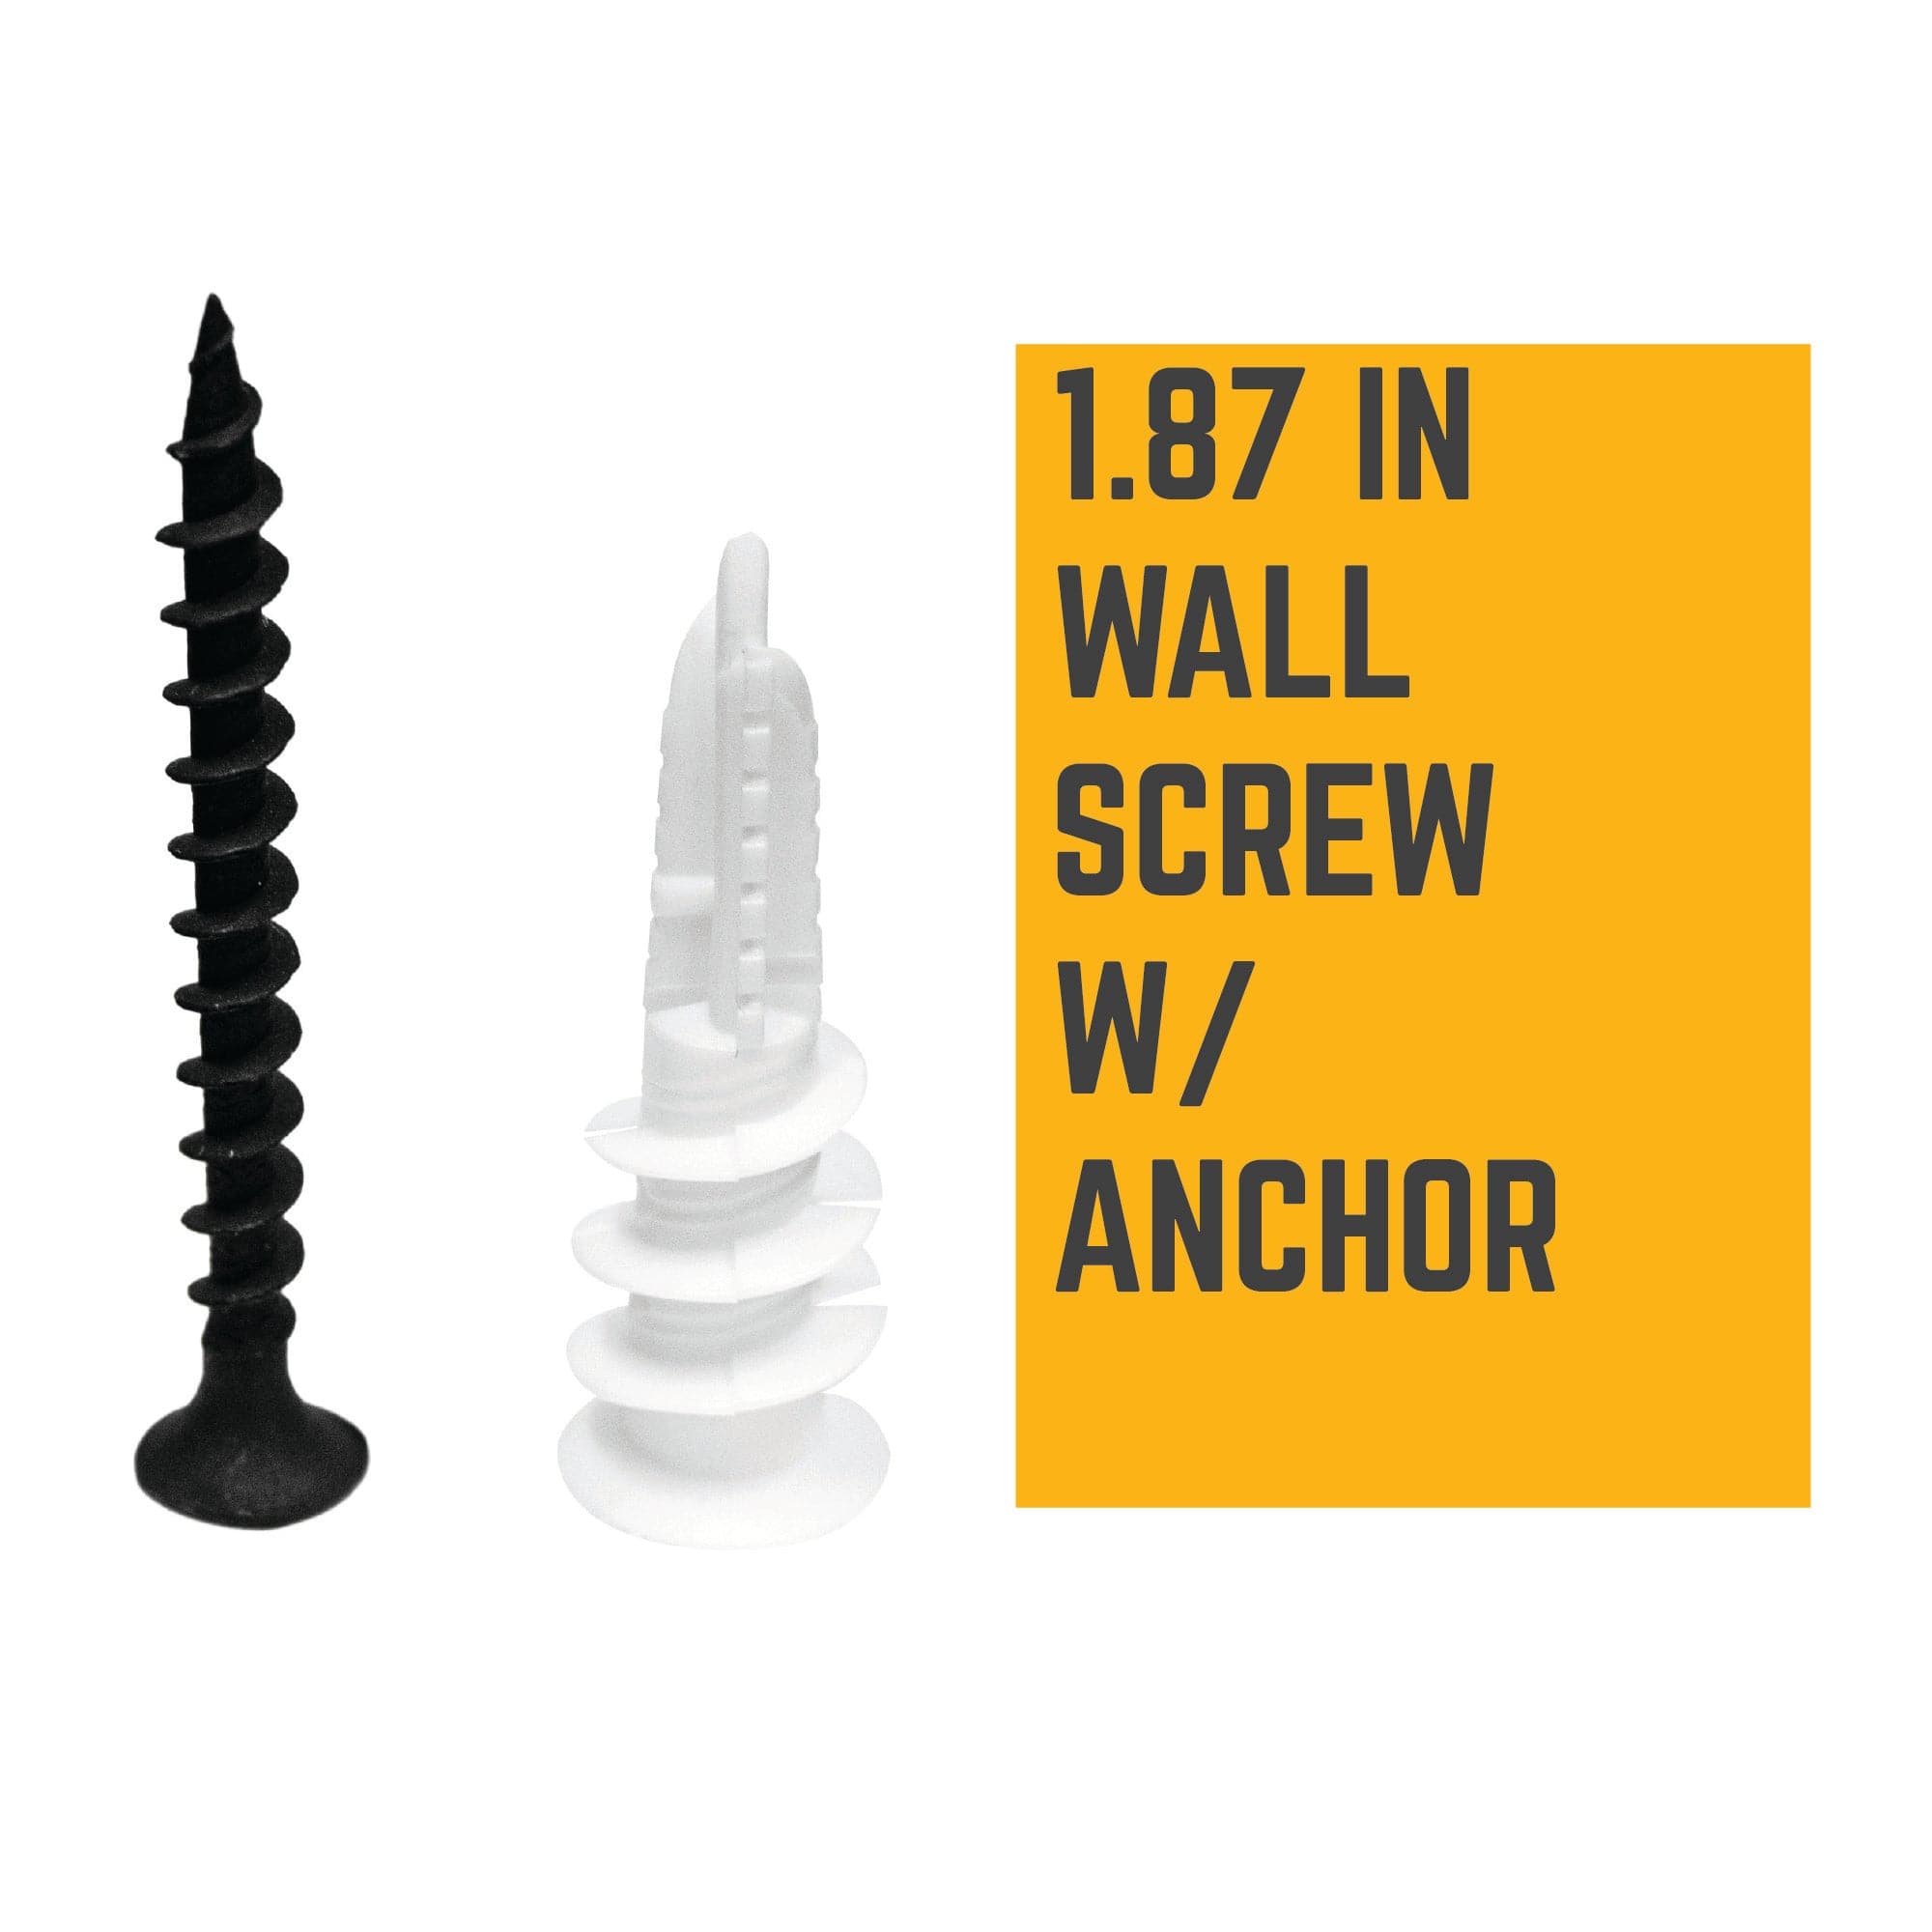 drywall anchor screws